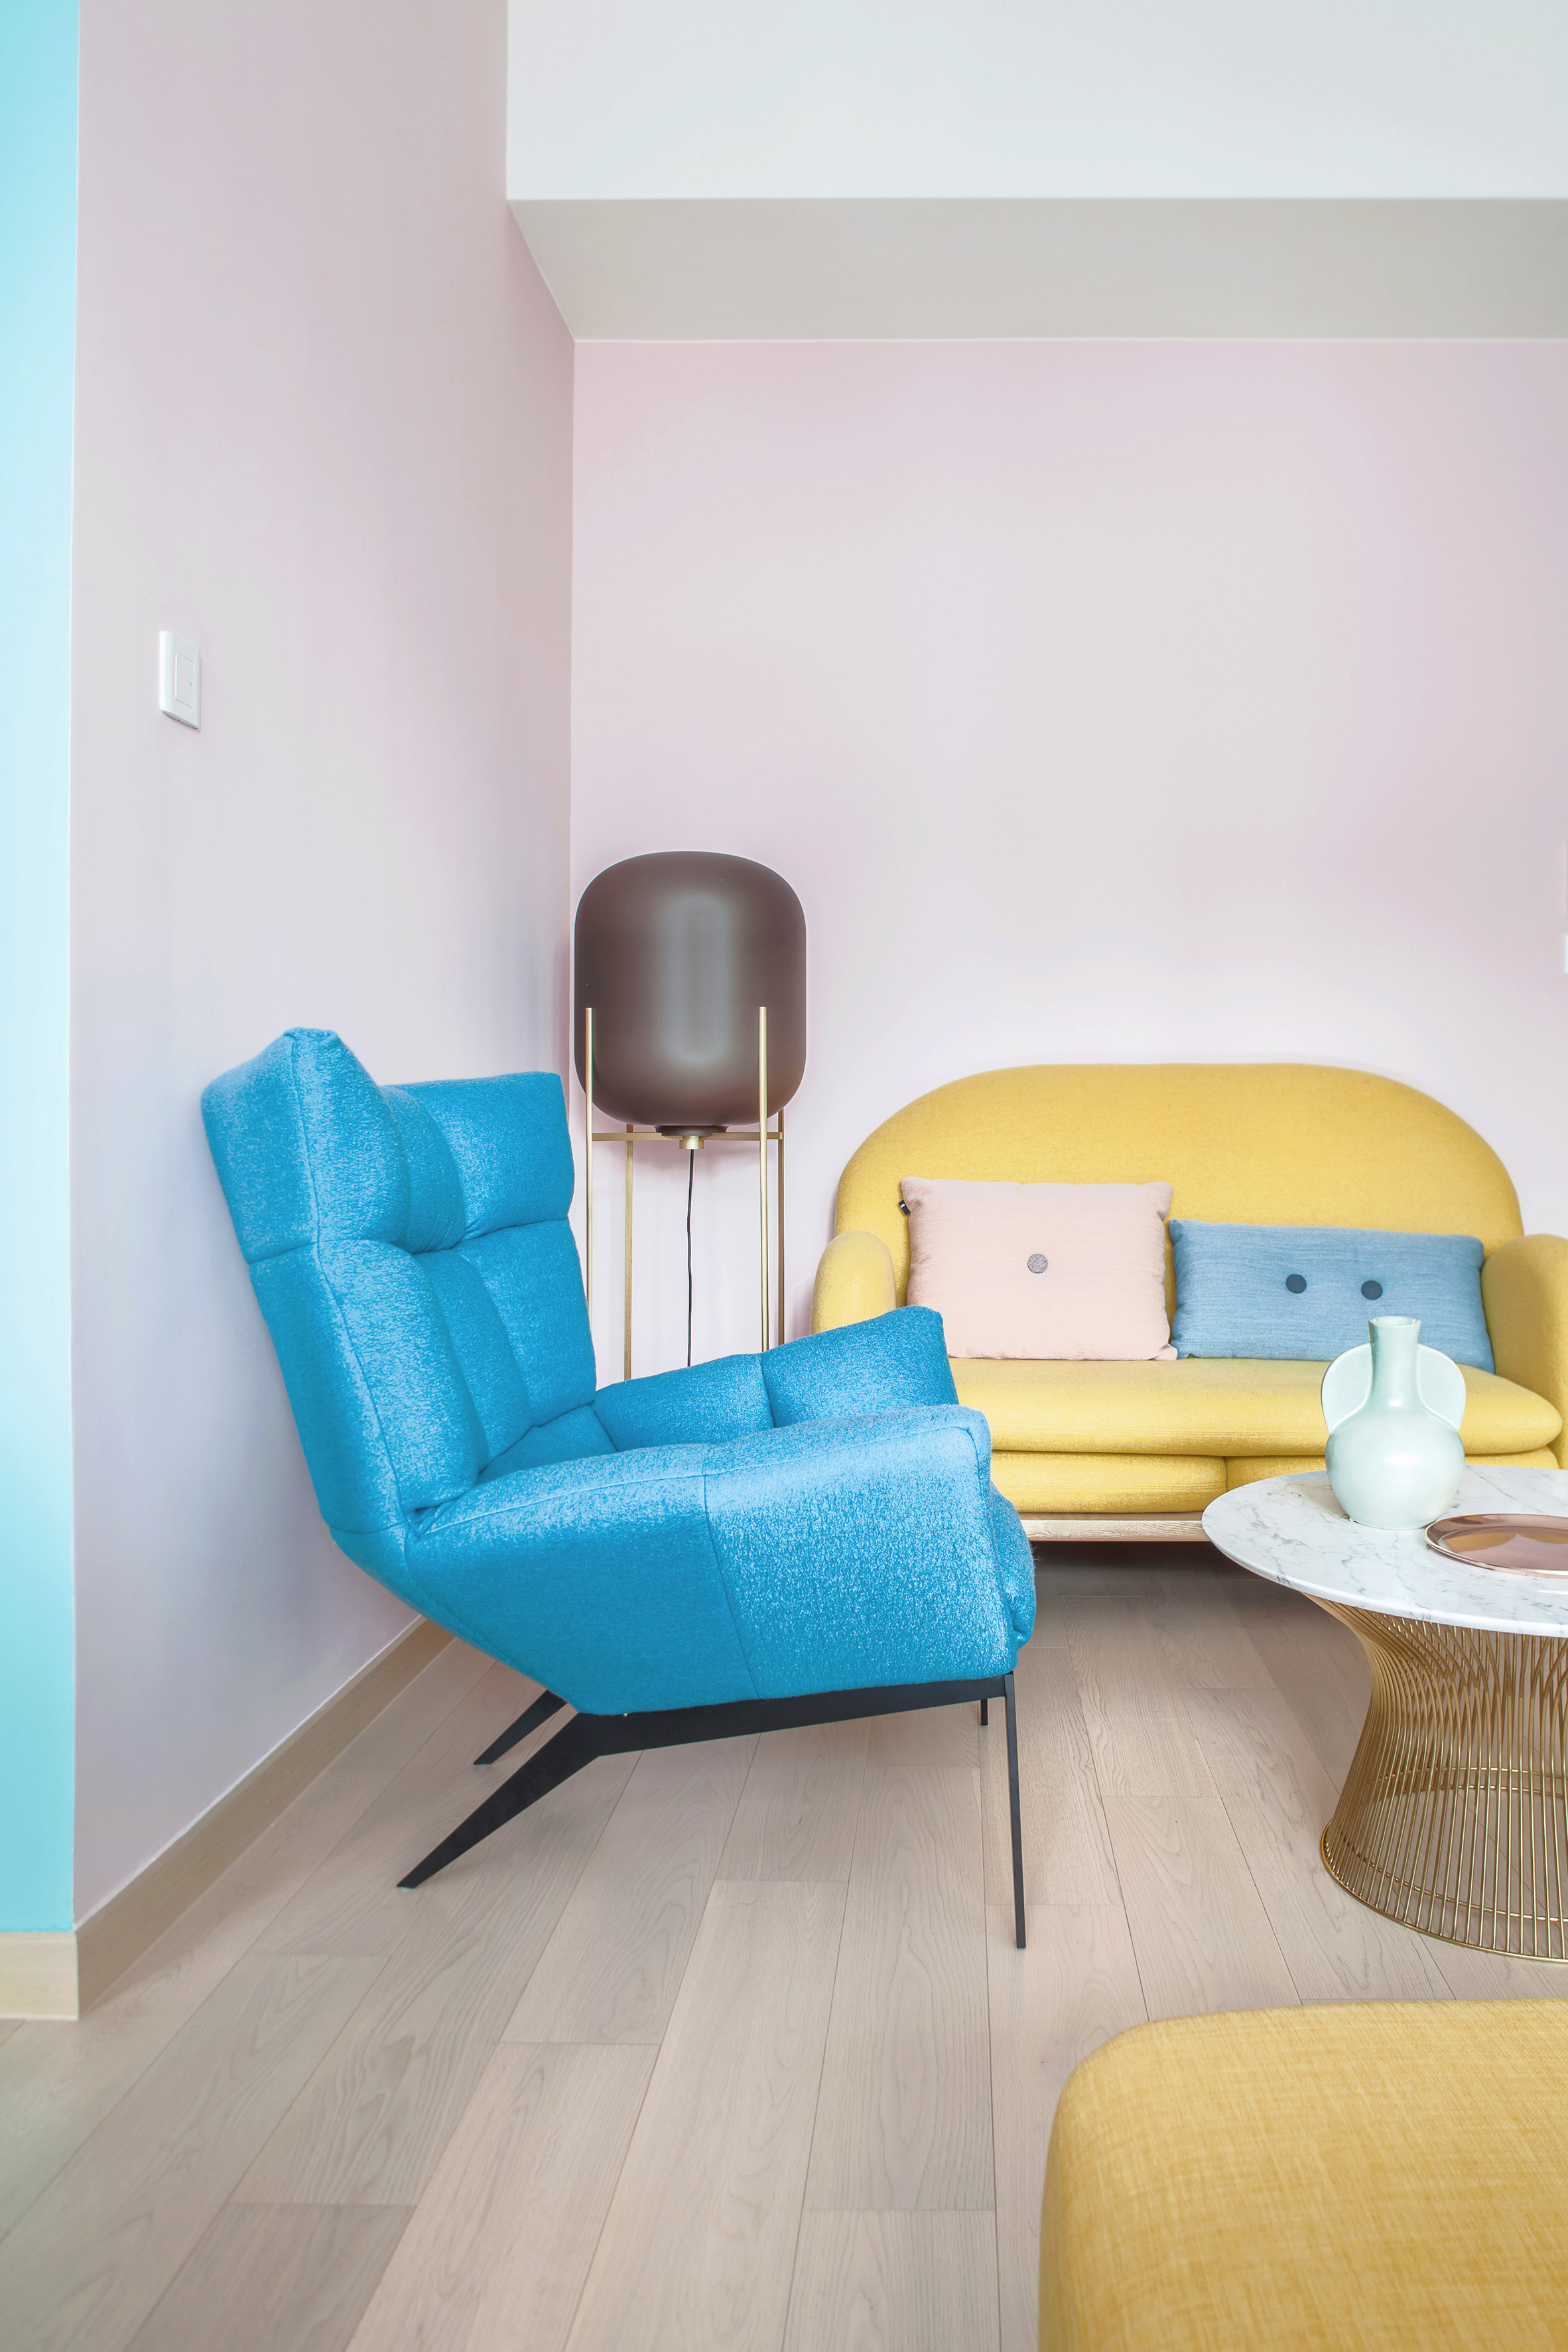 Thiết kế căn hộ với tường và đồ nội thất có màu rực rỡ dành riêng cho chủ nhân thiết kế thời trang - Ảnh 5.